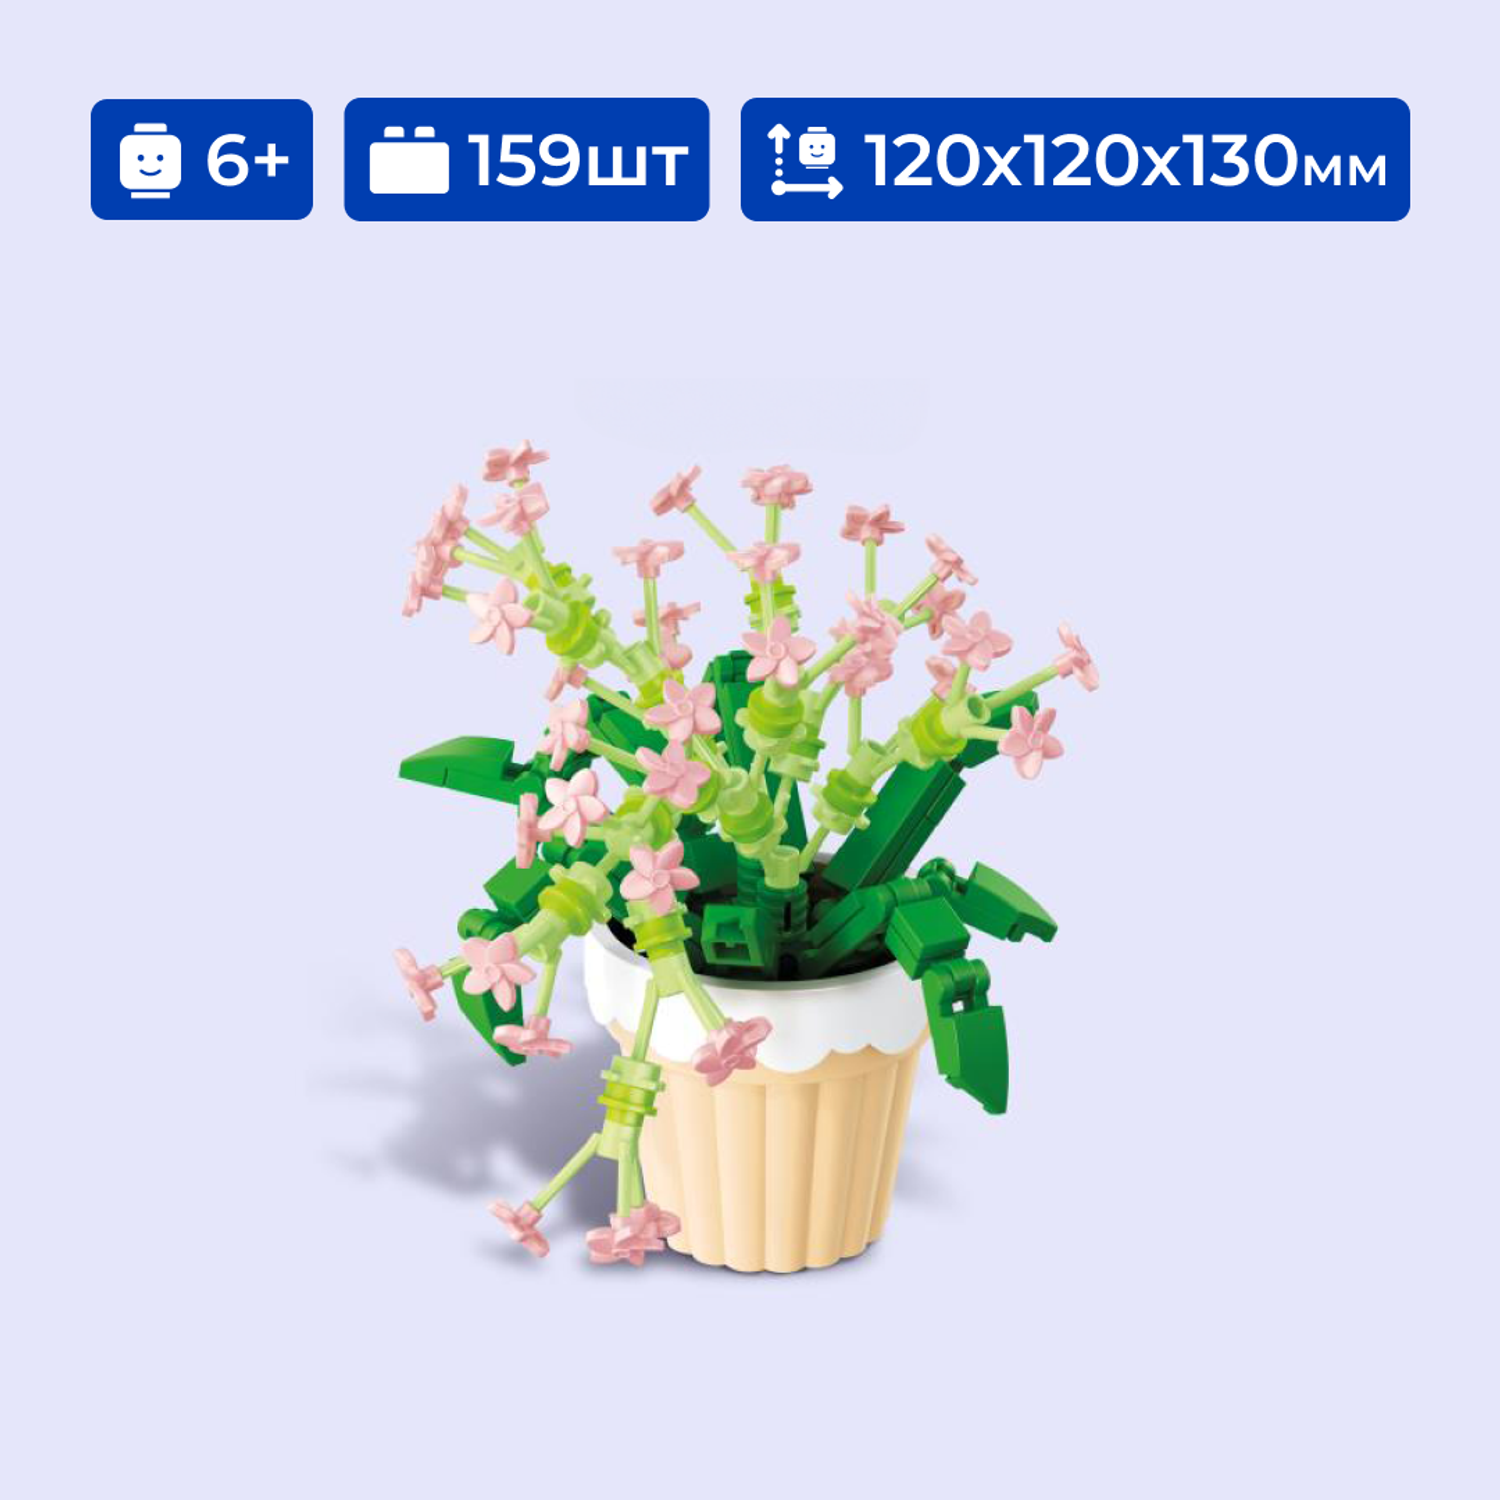 Конструктор Sembo Block 611061 цветы- орхидеи 159 деталей - фото 1